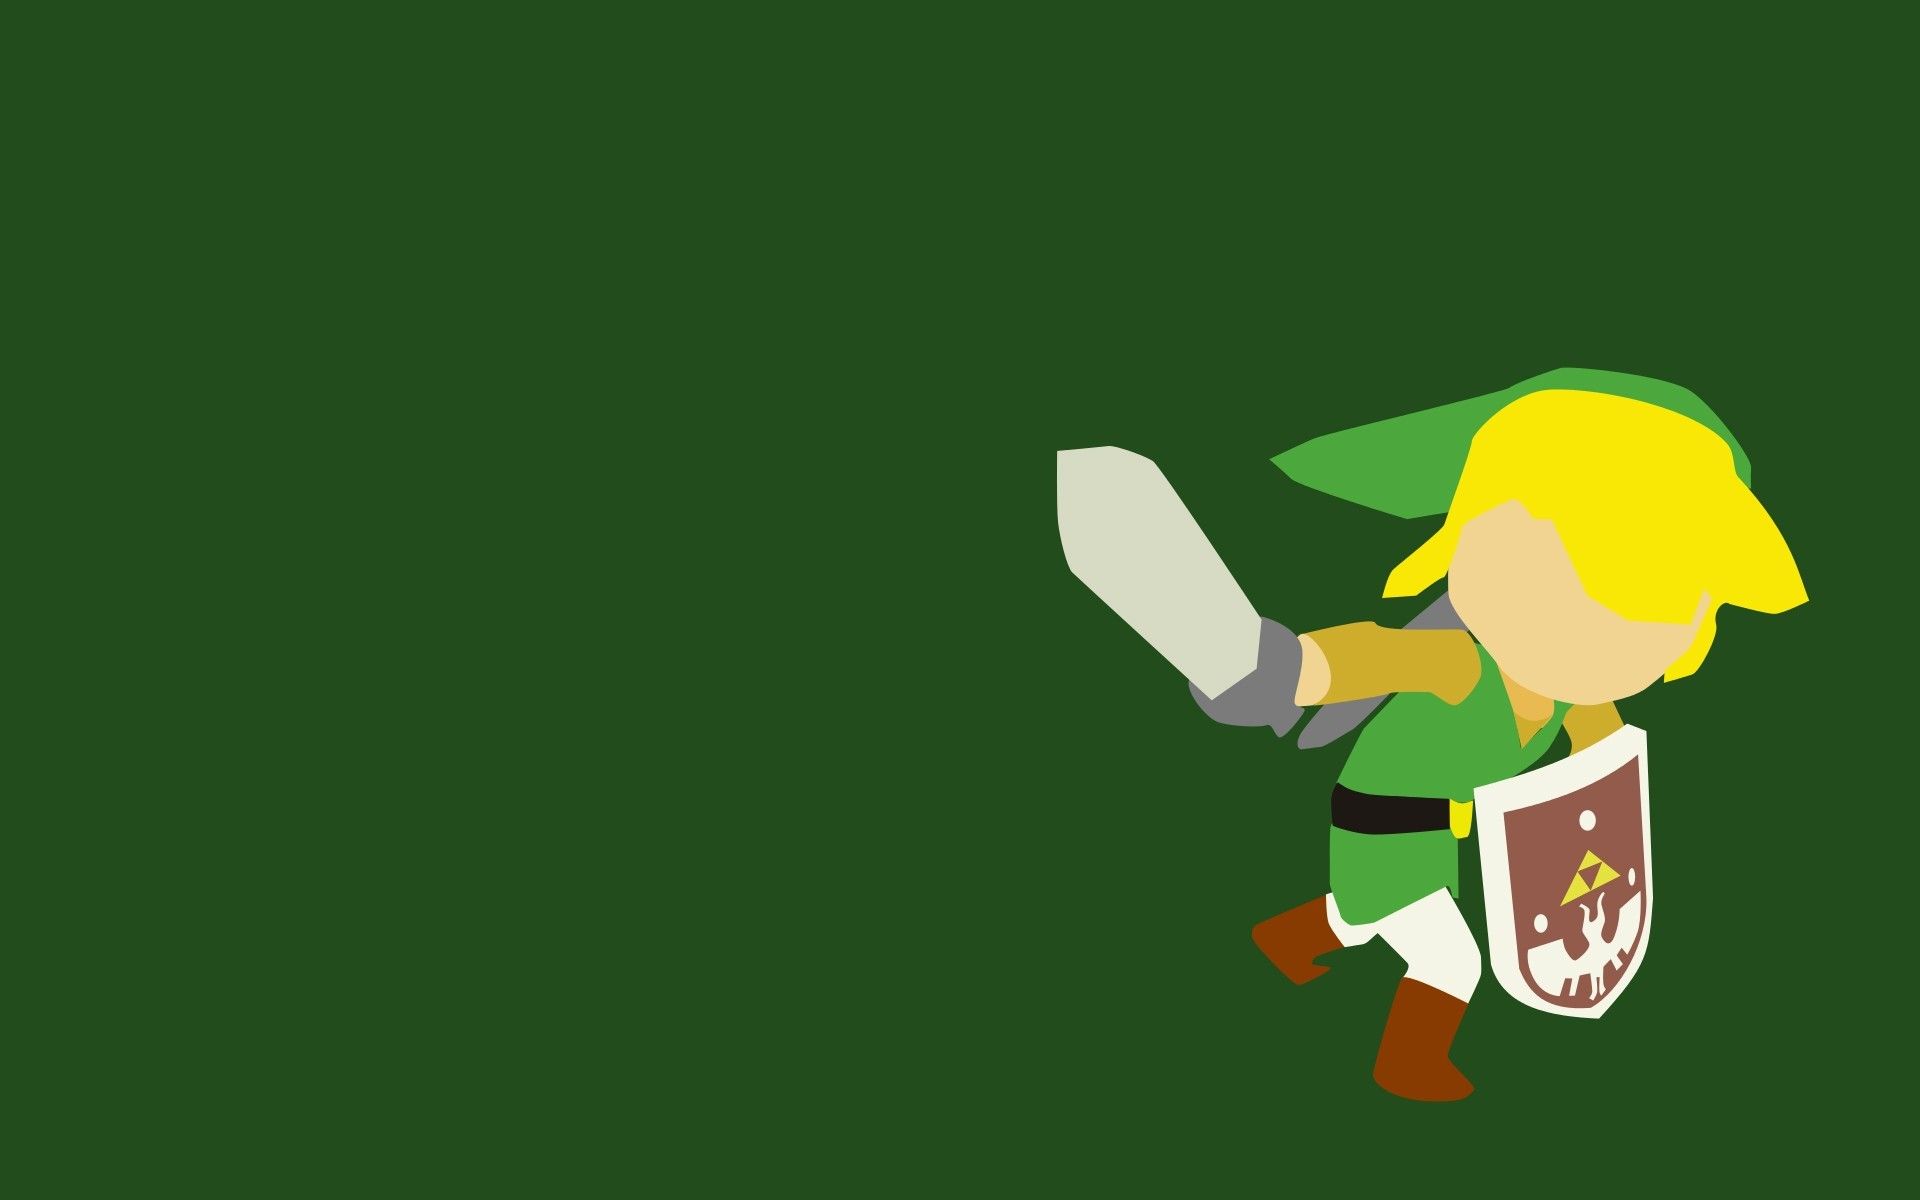 Link, The Legend Of Zelda, Minimalism, Video Games Wallpaper HD / Desktop and Mobile Background